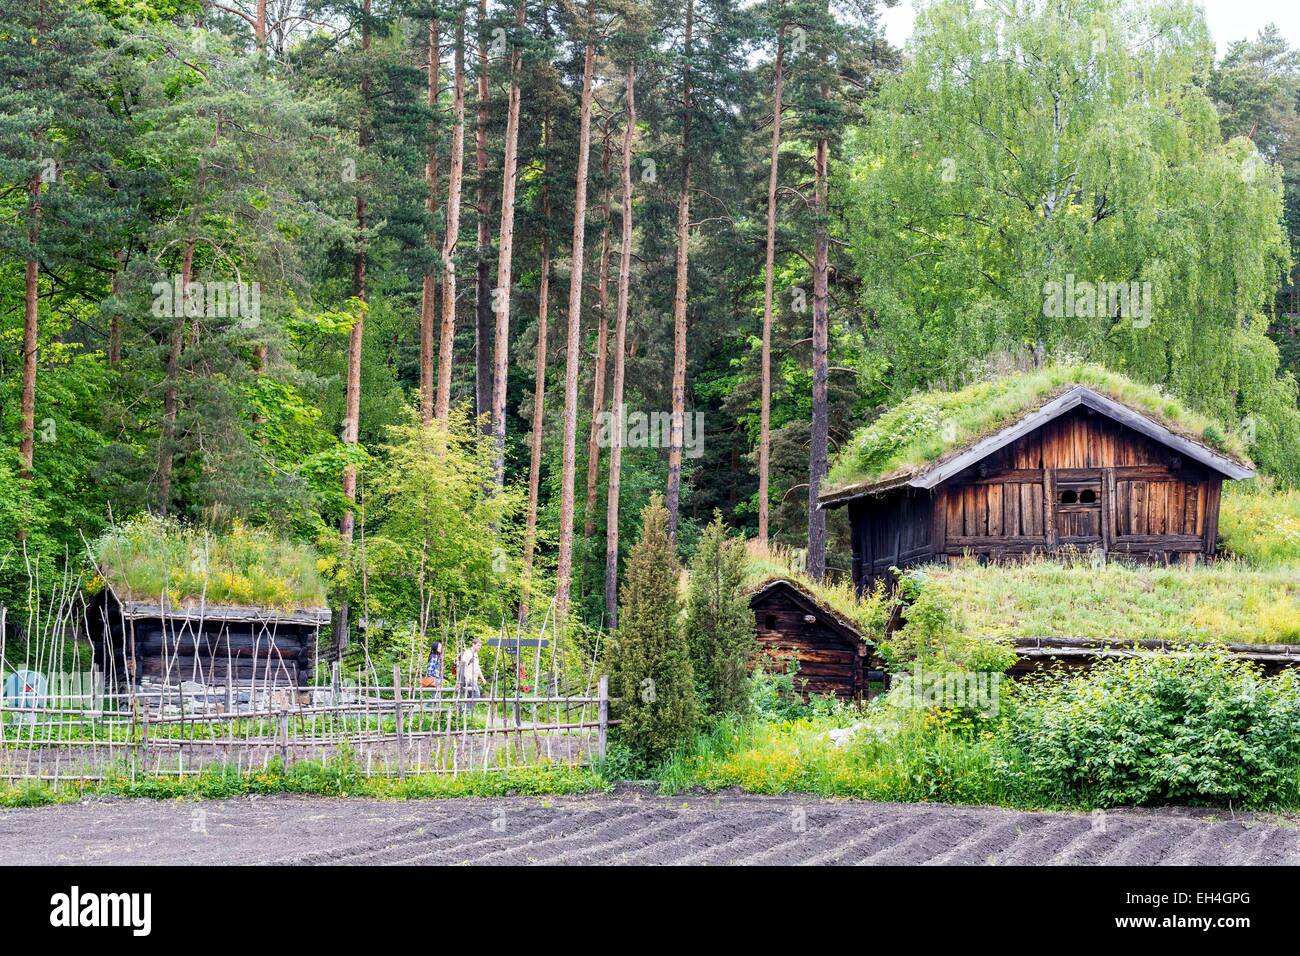 Noruega, Oslo, Bygd°y península, Museo Folclórico Noruego (Norsk Folkemuseum) fue fundada en 1894 con 160 casas tradicionales en el país, los graneros del siglo XVIII con techos verdes Foto de stock